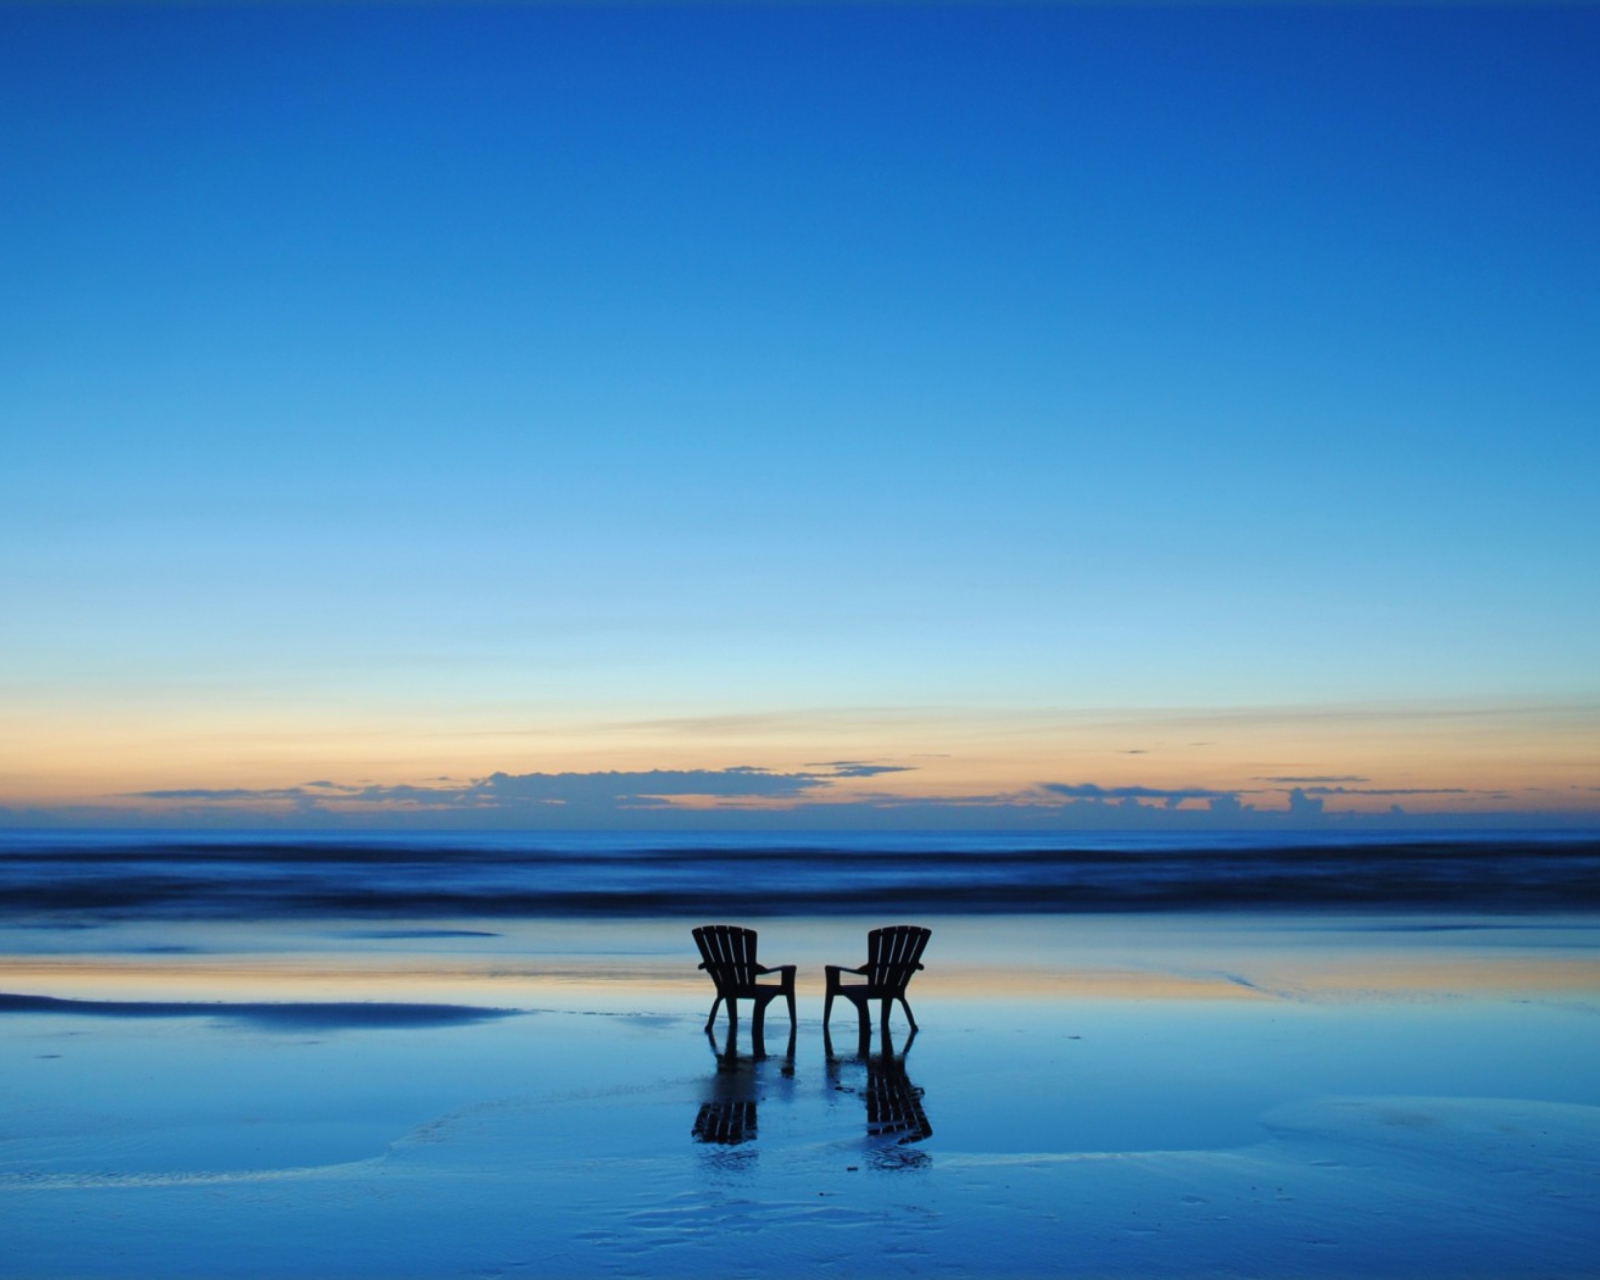 Обои Beach Chairs For Couple At Sunset 1600x1280